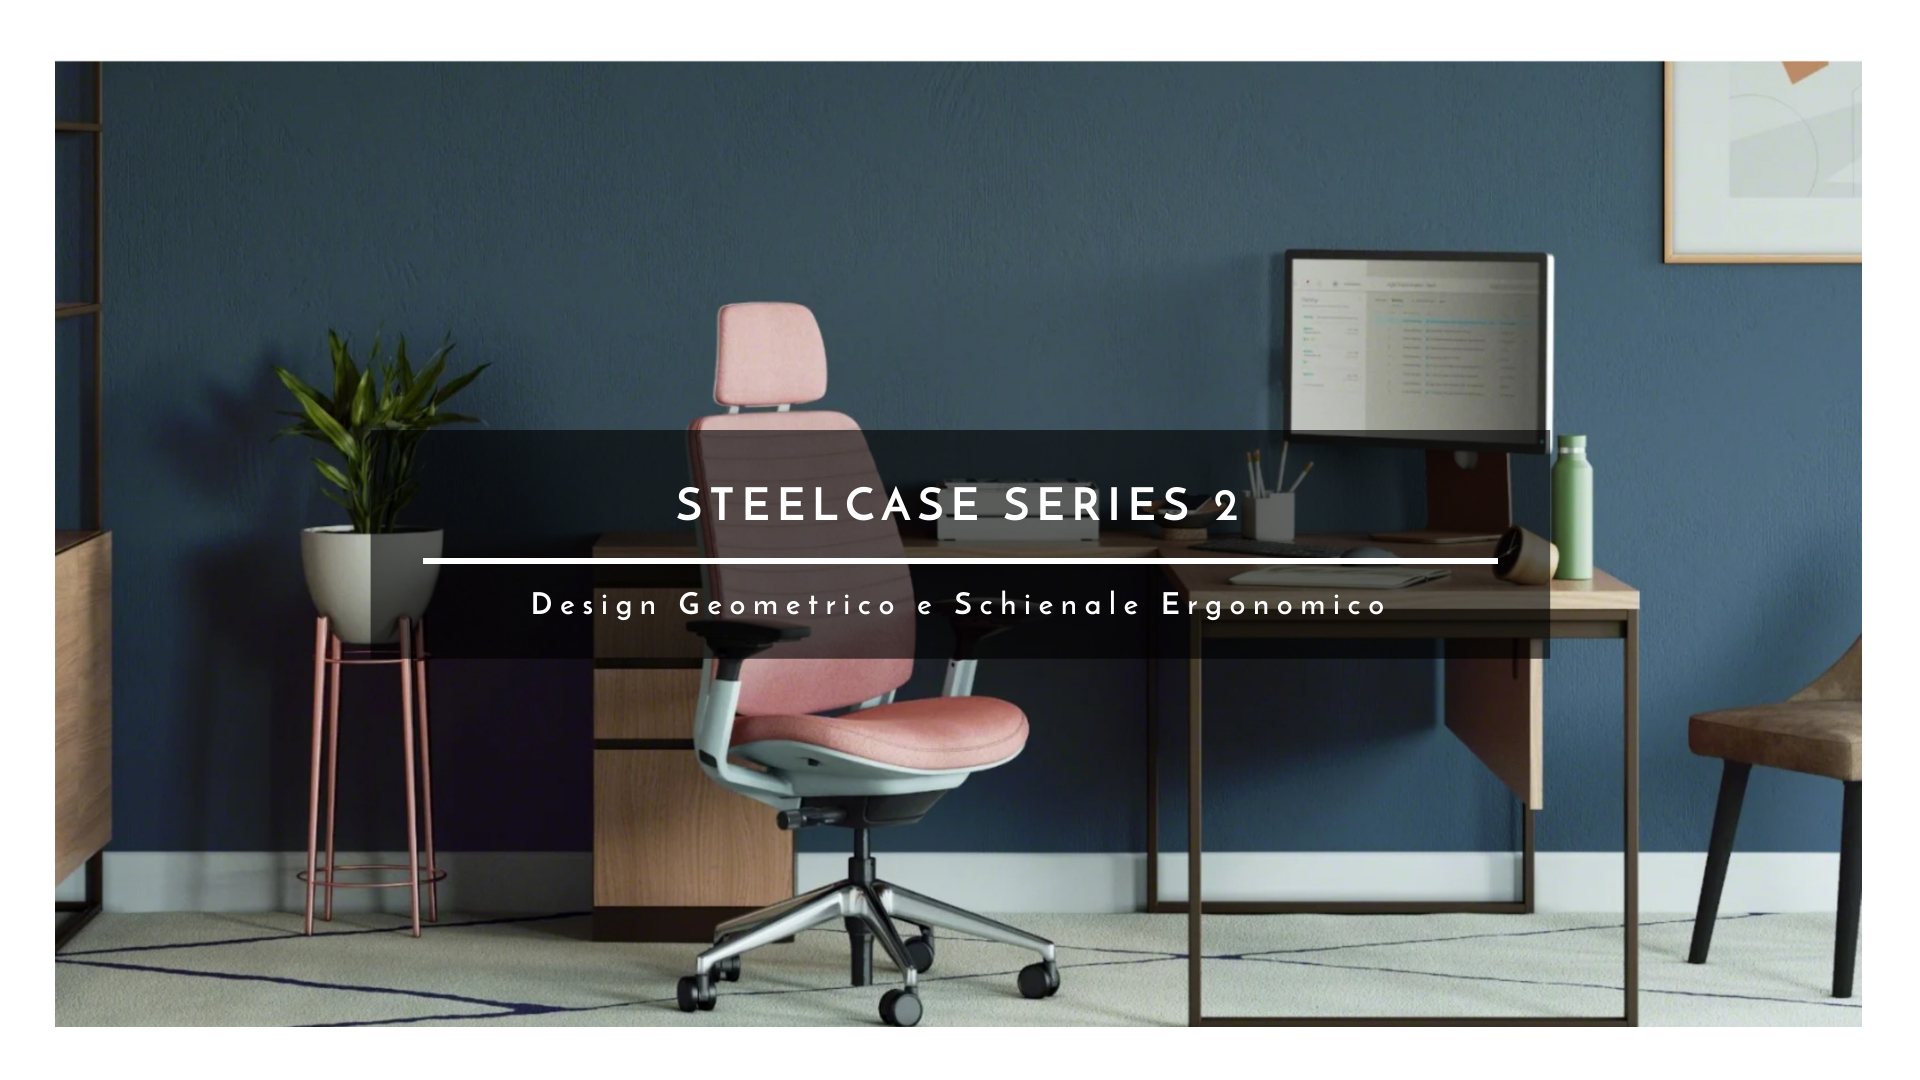 Steelcase Series 2 design geometrico e schienale ergonomico